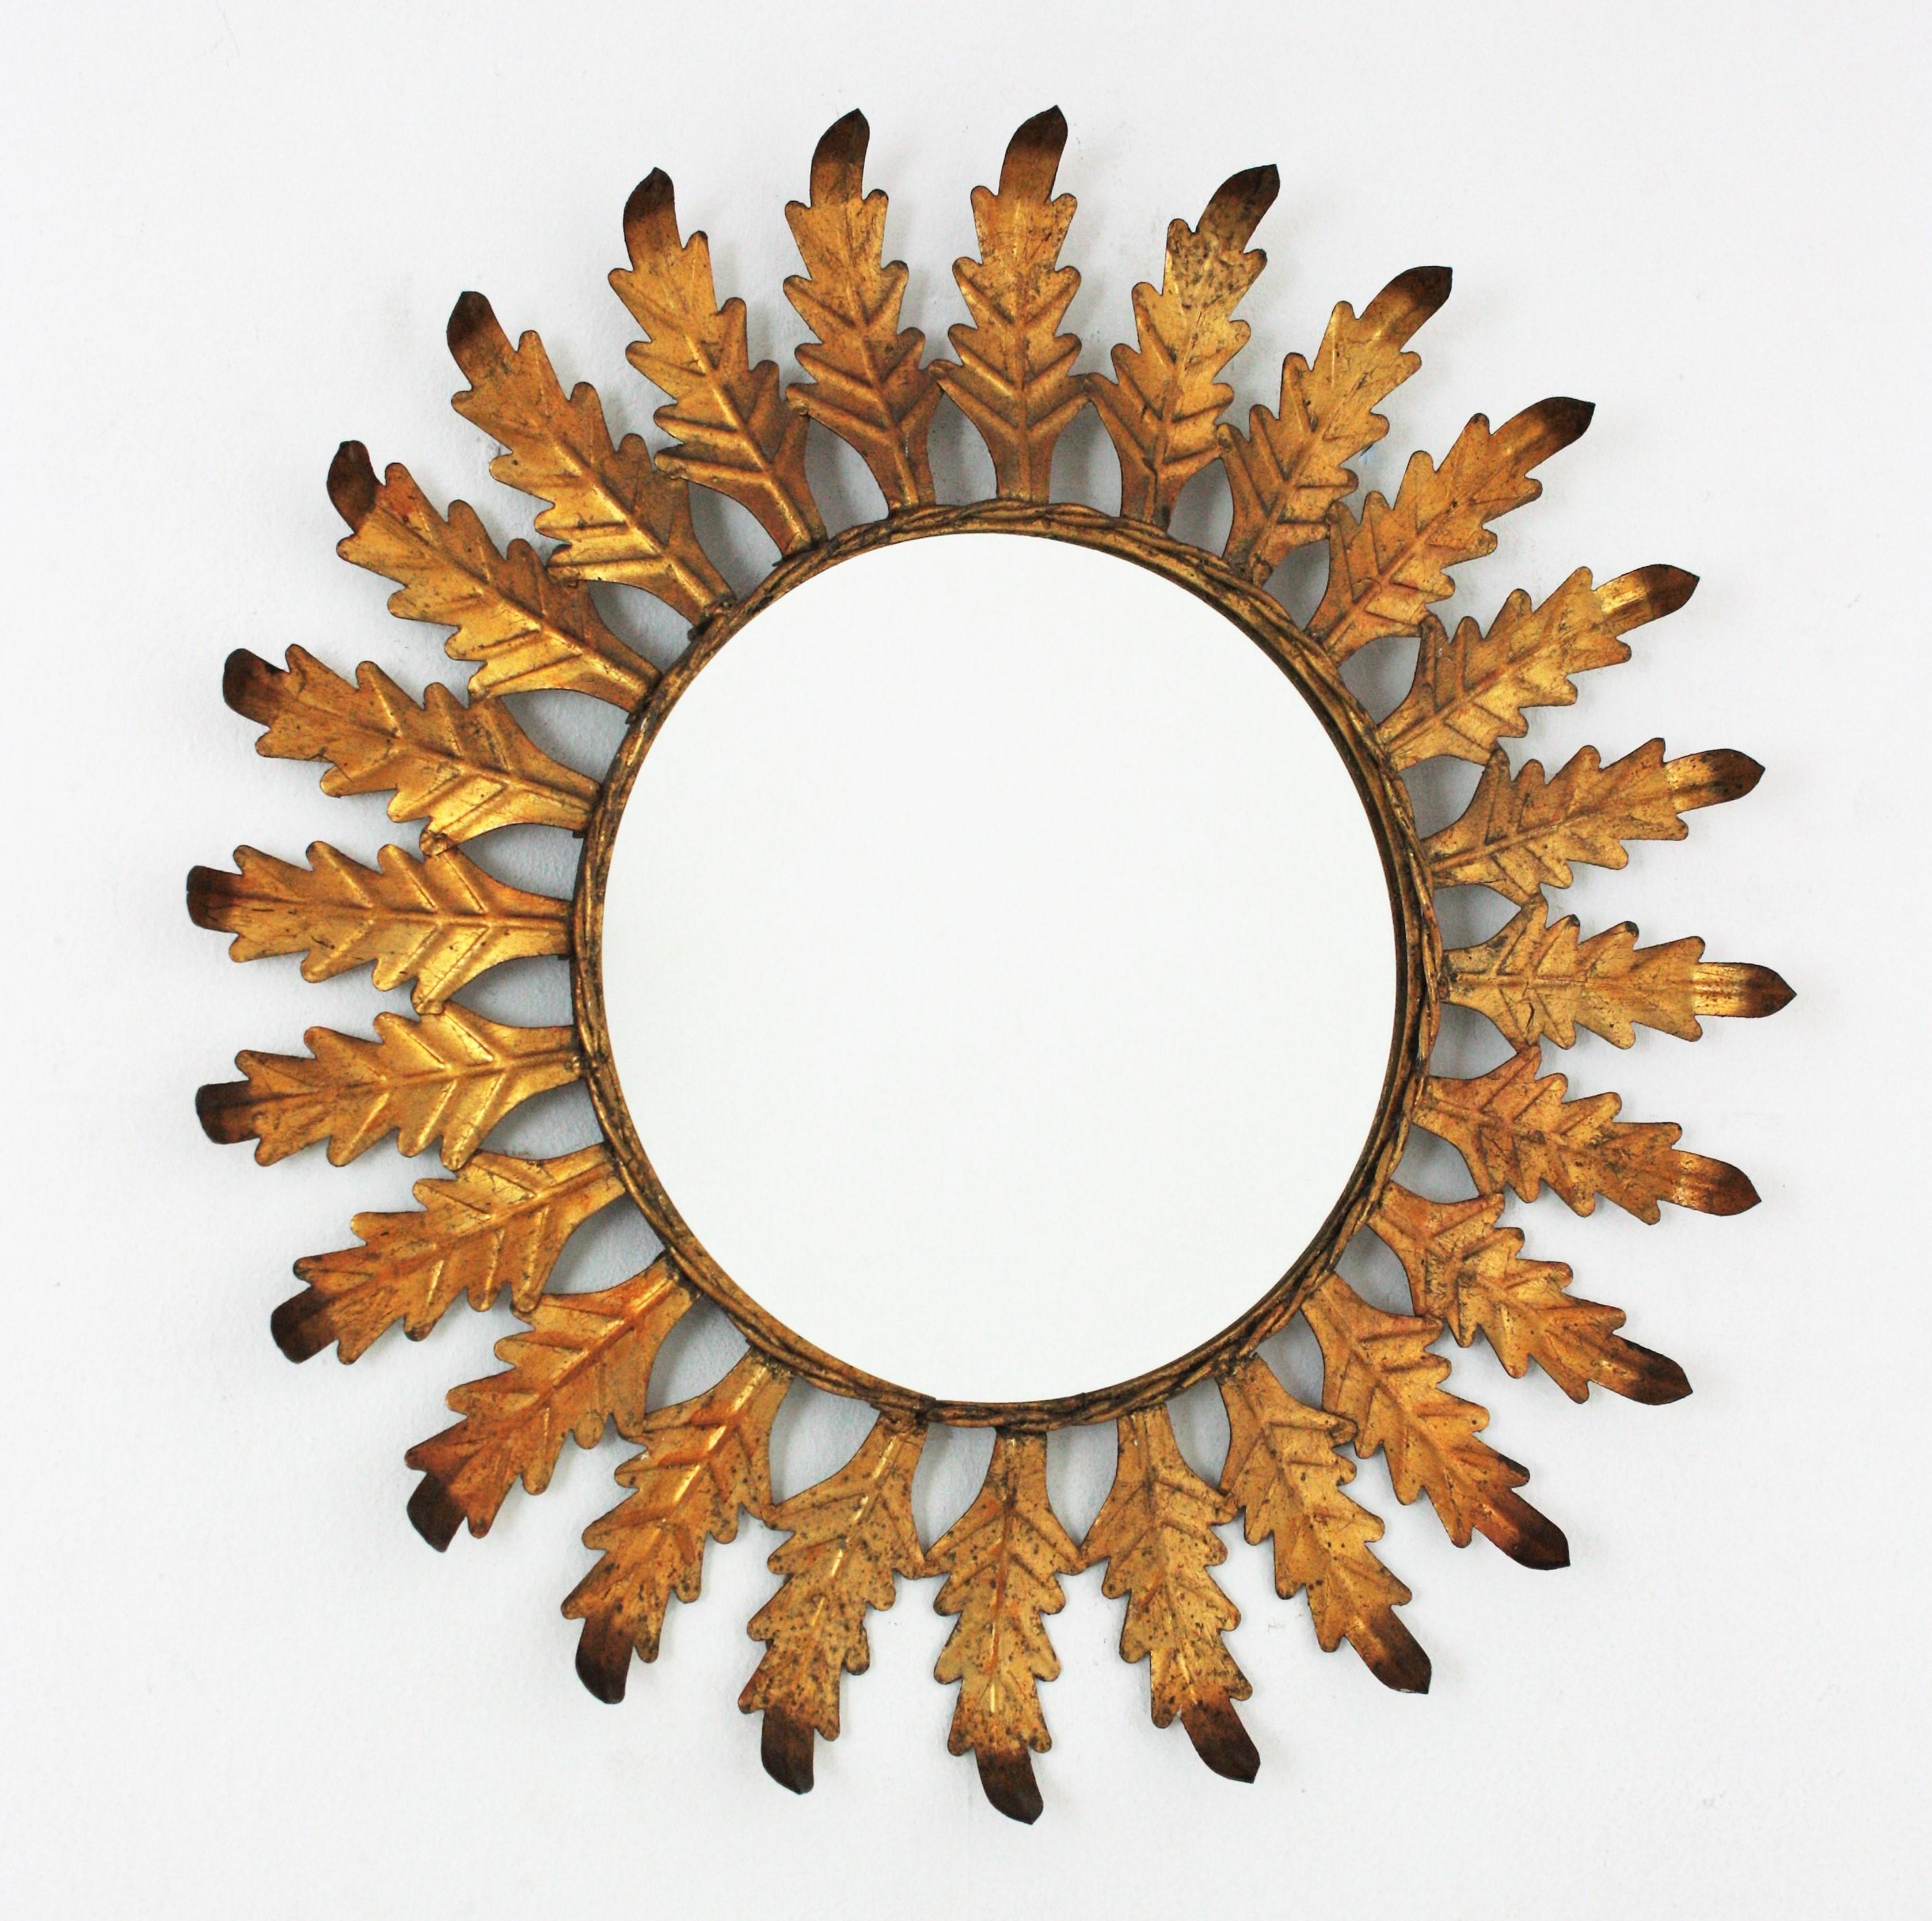 Miroir ensoleillé avec cadre en feuilles, fer doré, Espagne, années 1960.
Ce miroir mural accrocheur est doté d'un cadre en forme de soleil feuilleté, fini avec une dorure à la feuille d'or et des accents plus sombres sur les extrémités de la